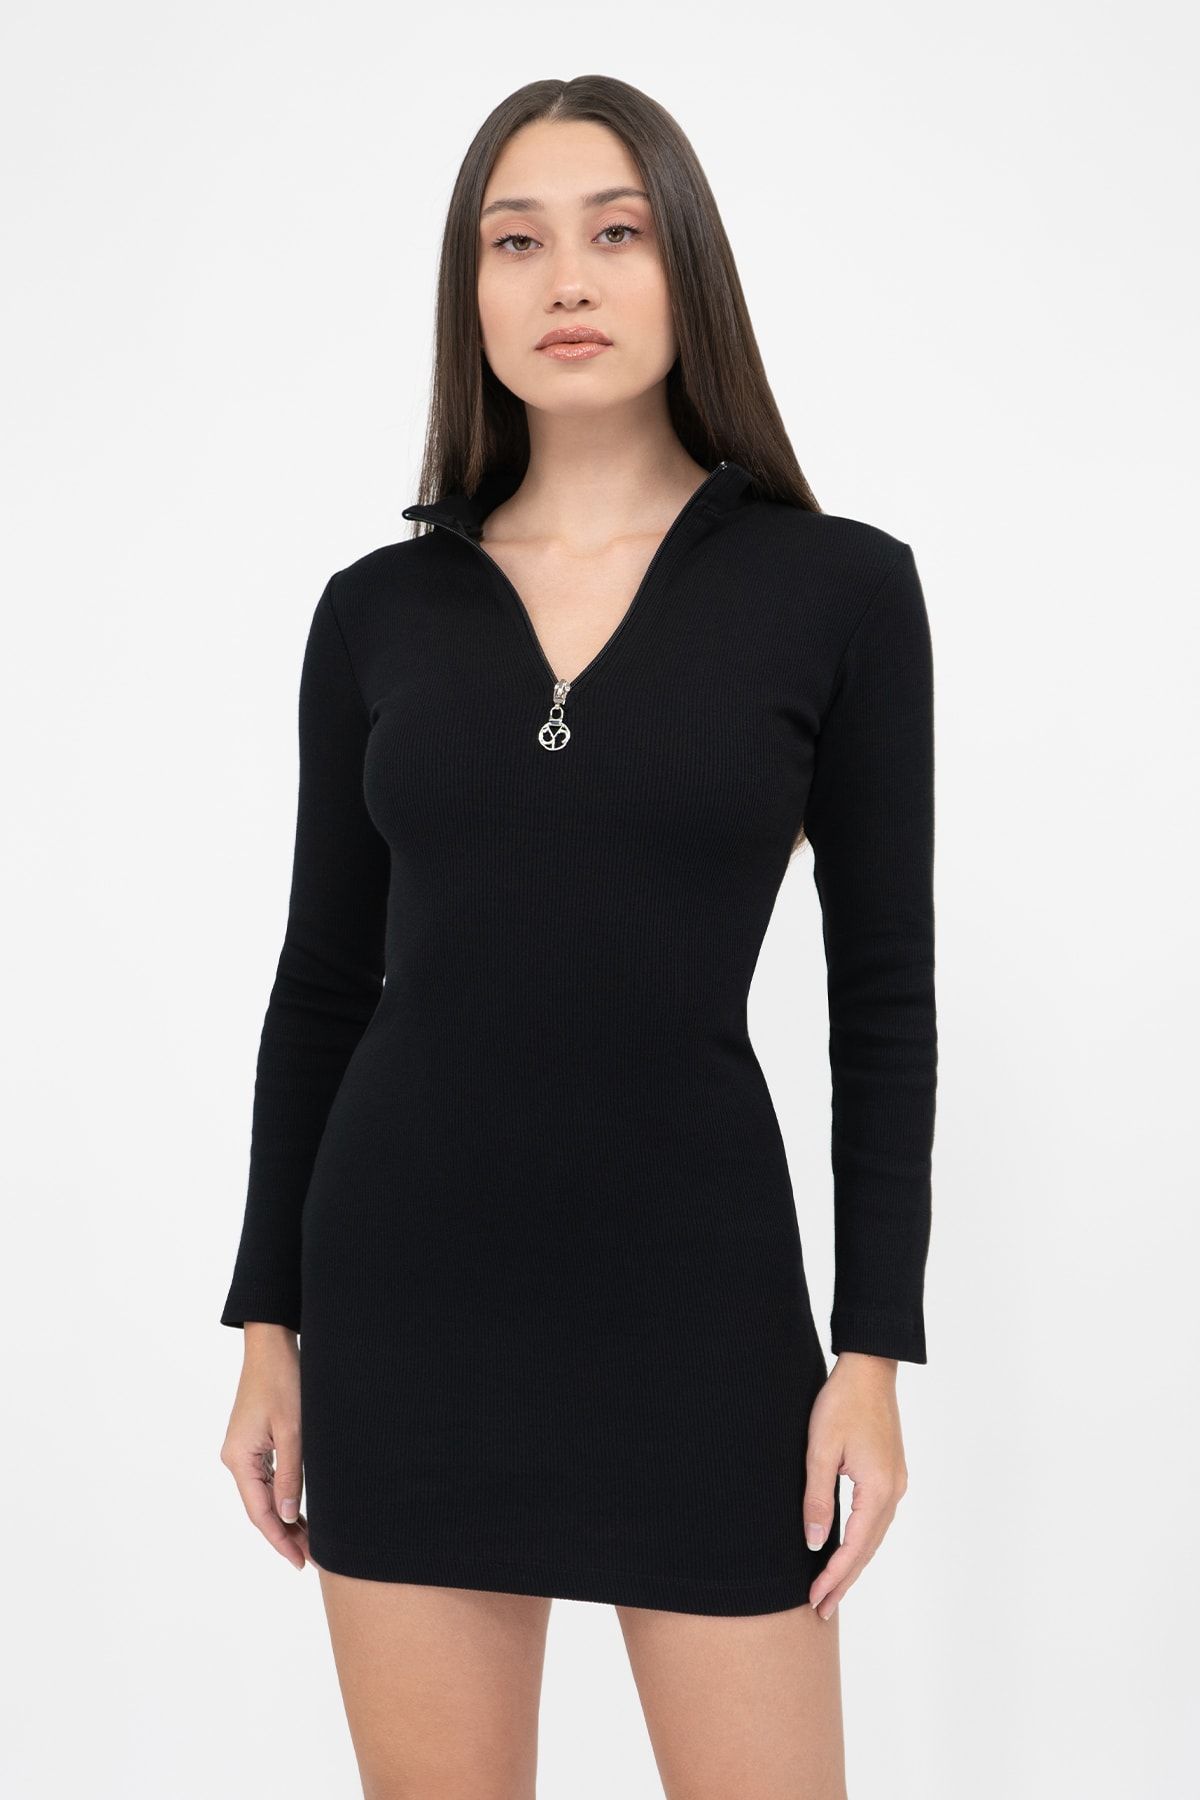 Soyo Kadın Siyah Fermuarlı Kaşkorse Süper Mini Örme Elbise